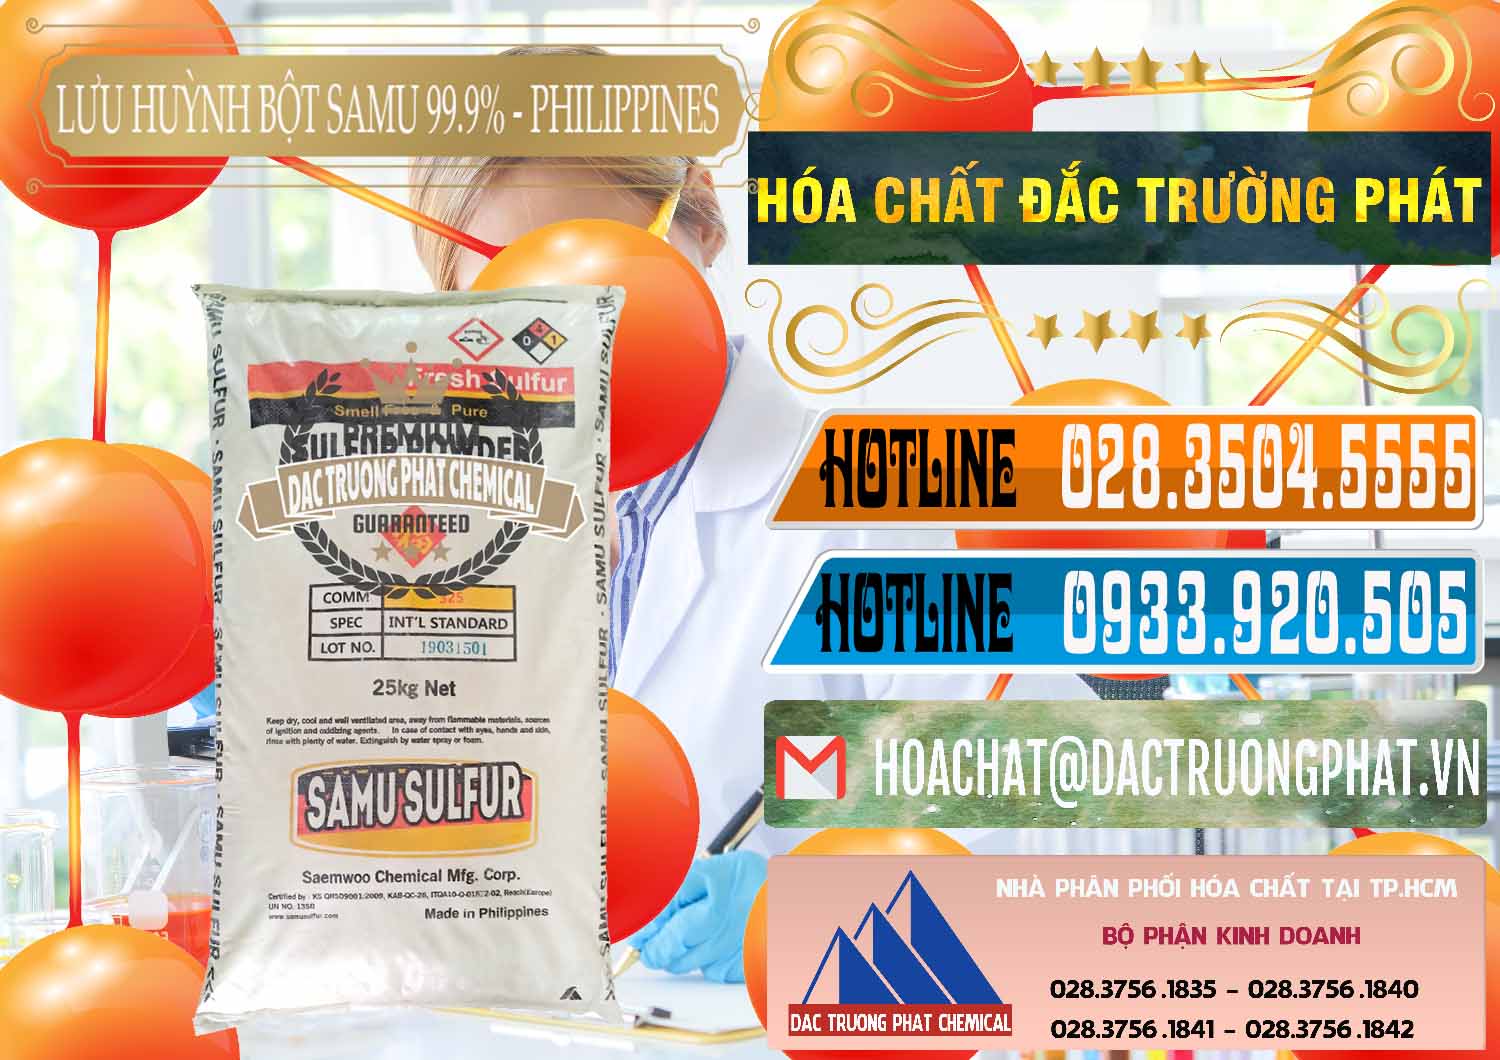 Nơi chuyên bán ( phân phối ) Lưu huỳnh Bột - Sulfur Powder Samu Philippines - 0201 - Đơn vị bán - cung cấp hóa chất tại TP.HCM - stmp.net